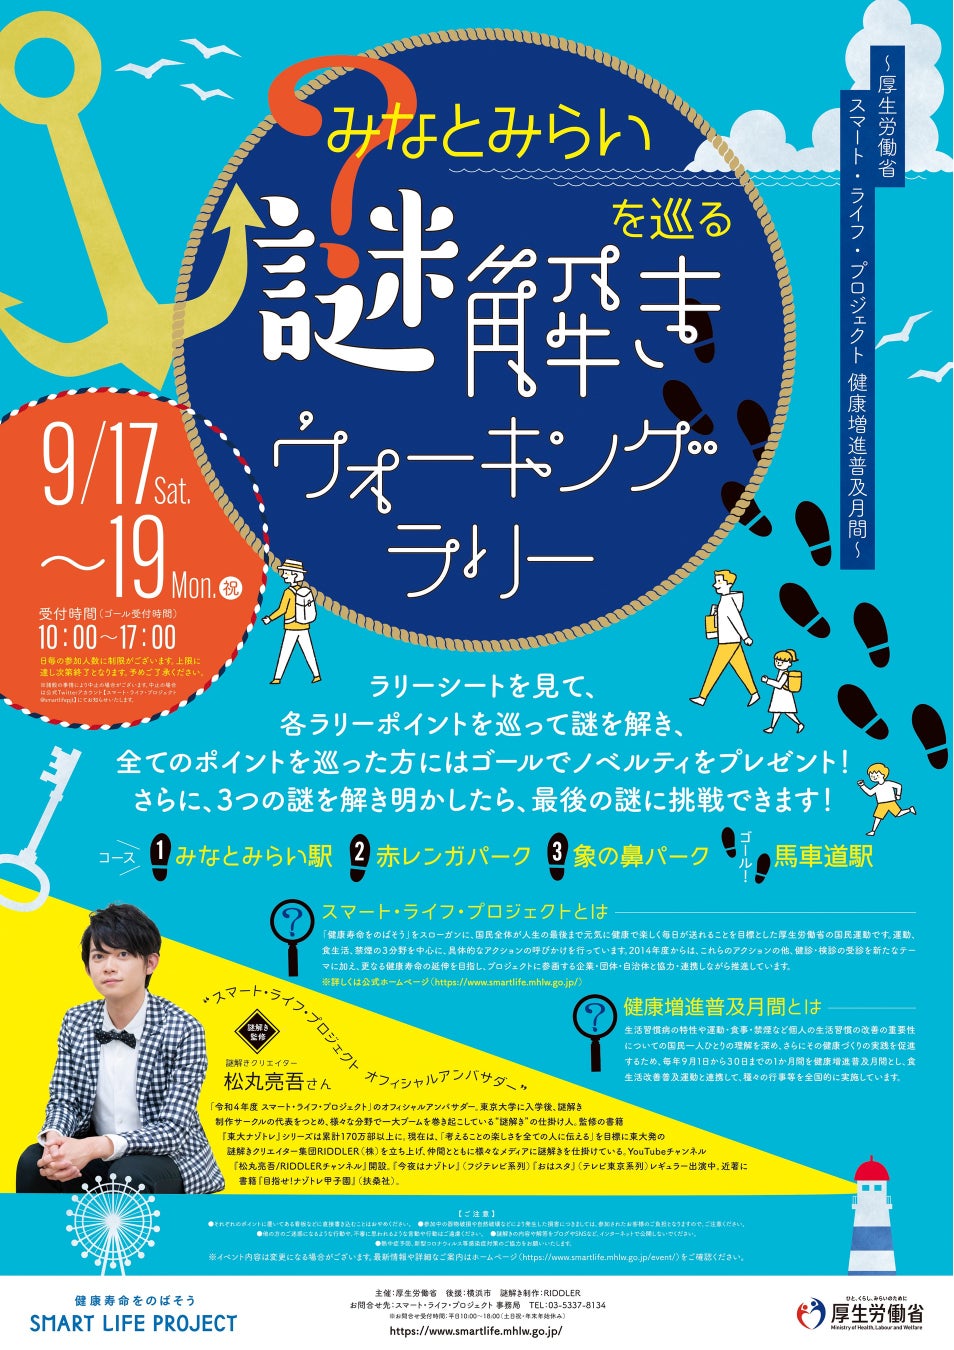 HKT48 矢吹奈子が演じる4つのピュア。豪華すぎるコスメ・スキンケア現品5点セット「A’pieu PURE COSME SET BOOK」が8月31日発売開始